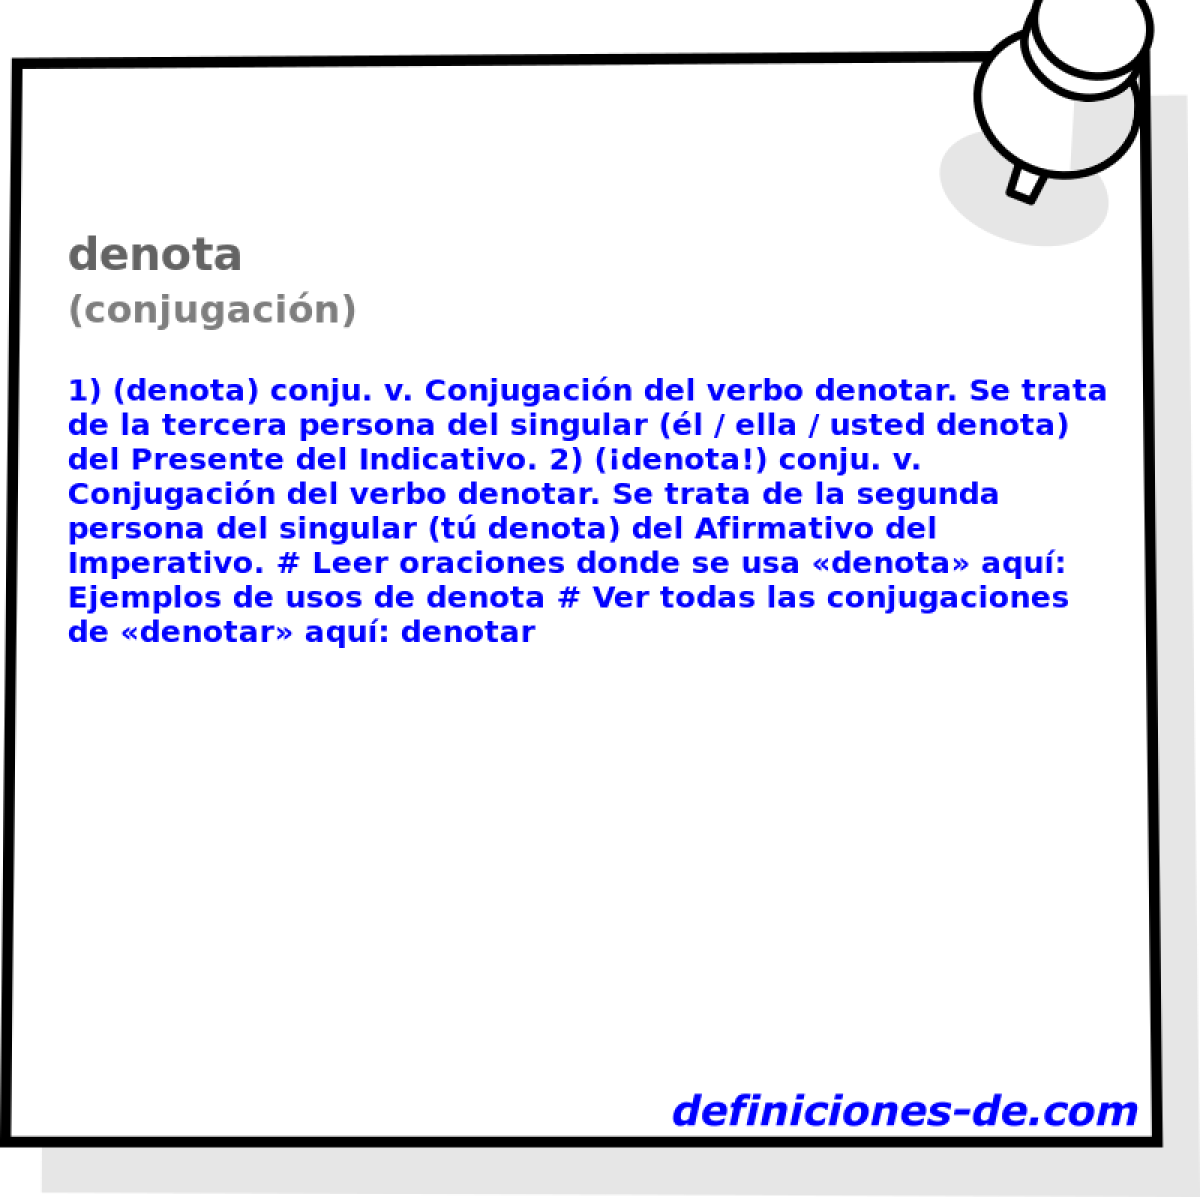 denota (conjugacin)